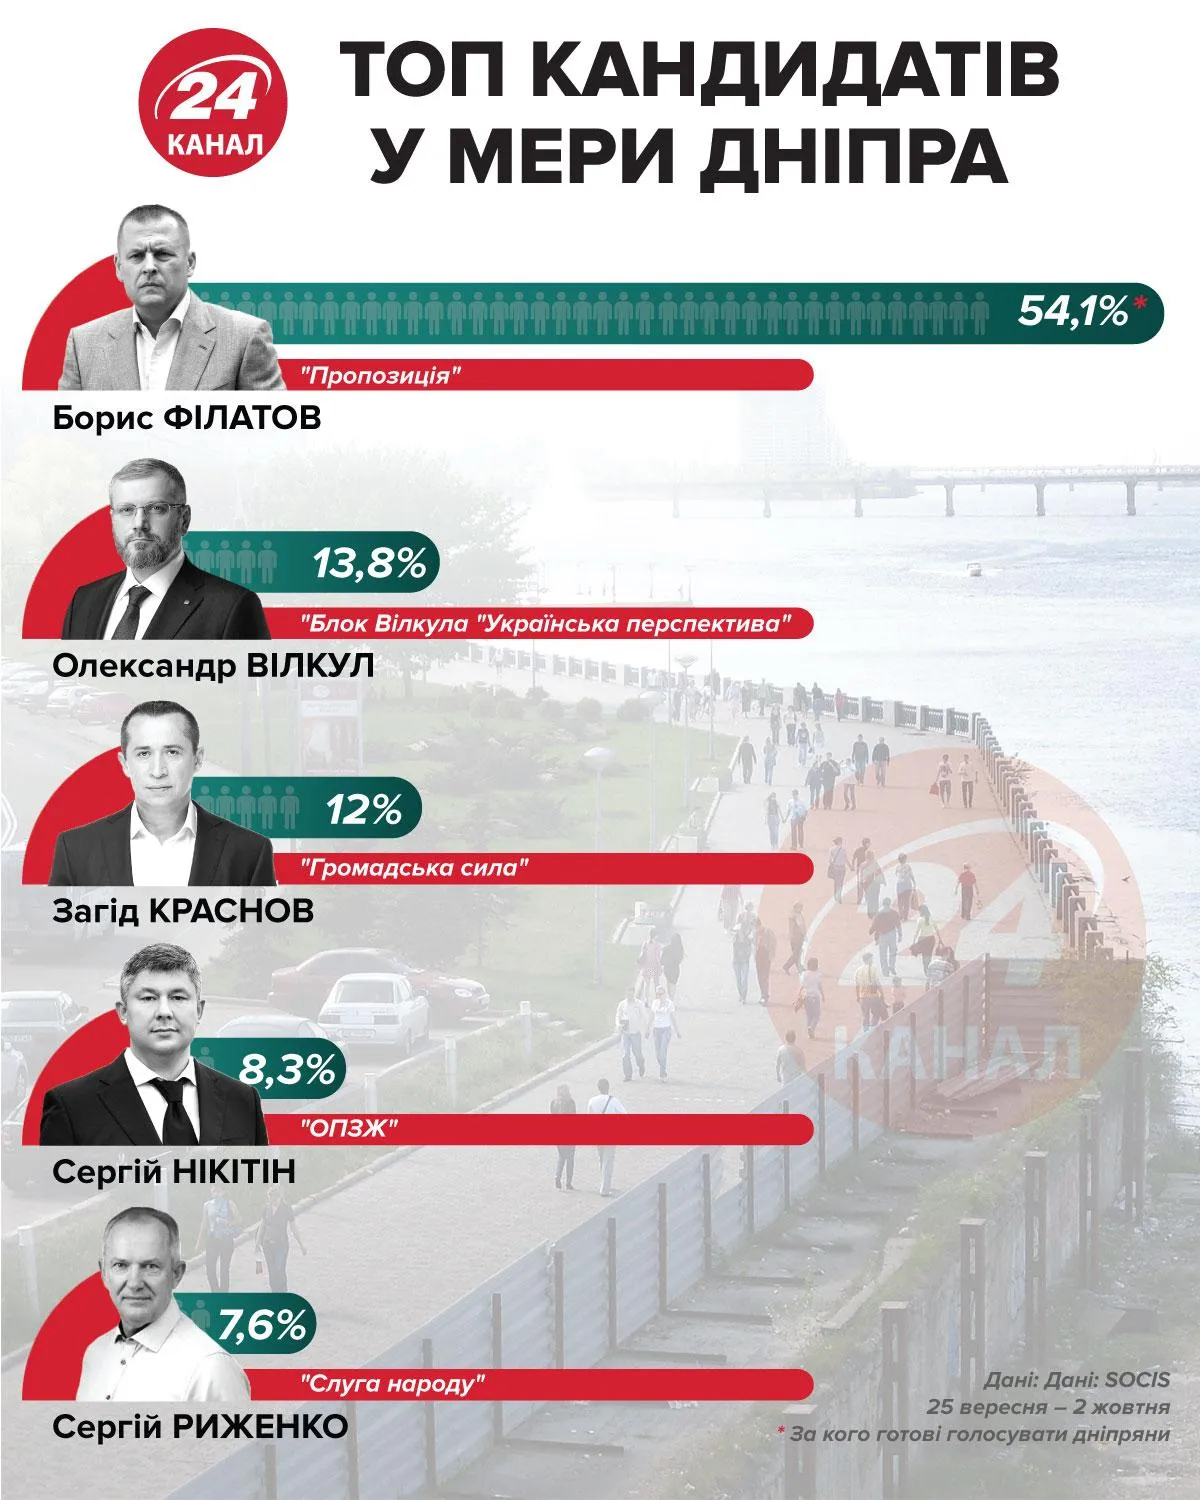 Рейтинг кандидатов в мэры Днепра Инфографика 24 канал